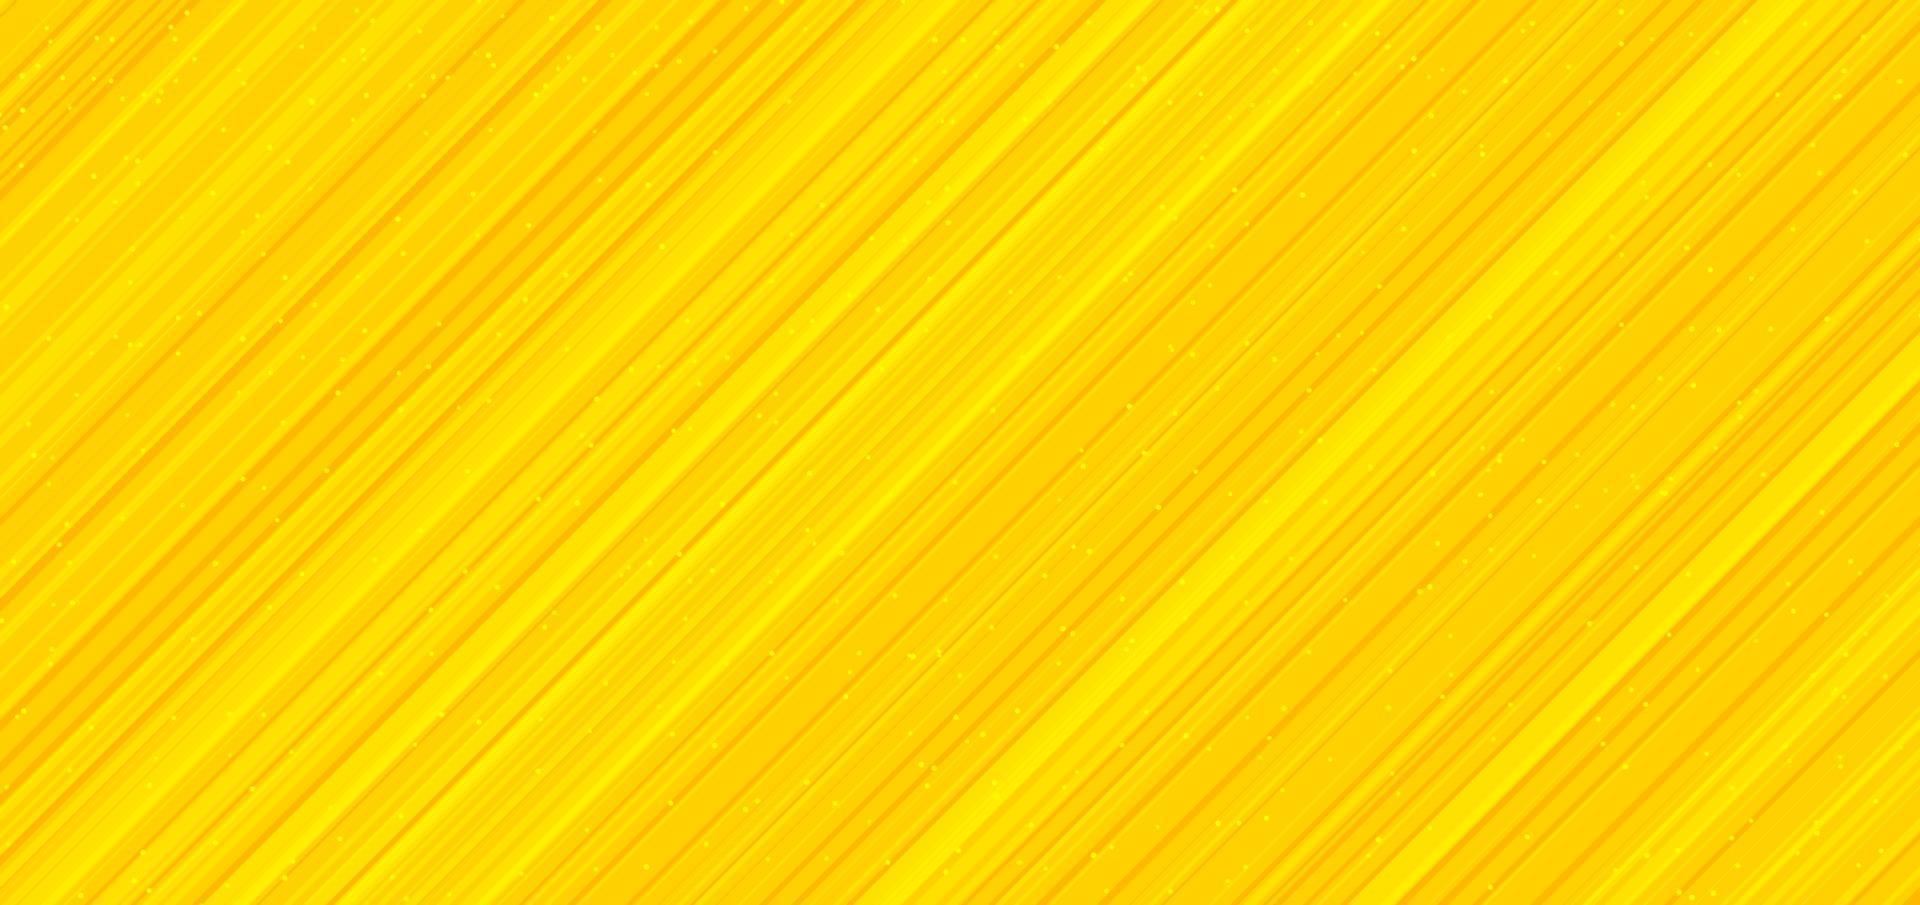 linhas listradas diagonais amarelas abstratas com fundo e textura de muitos pontos vetor